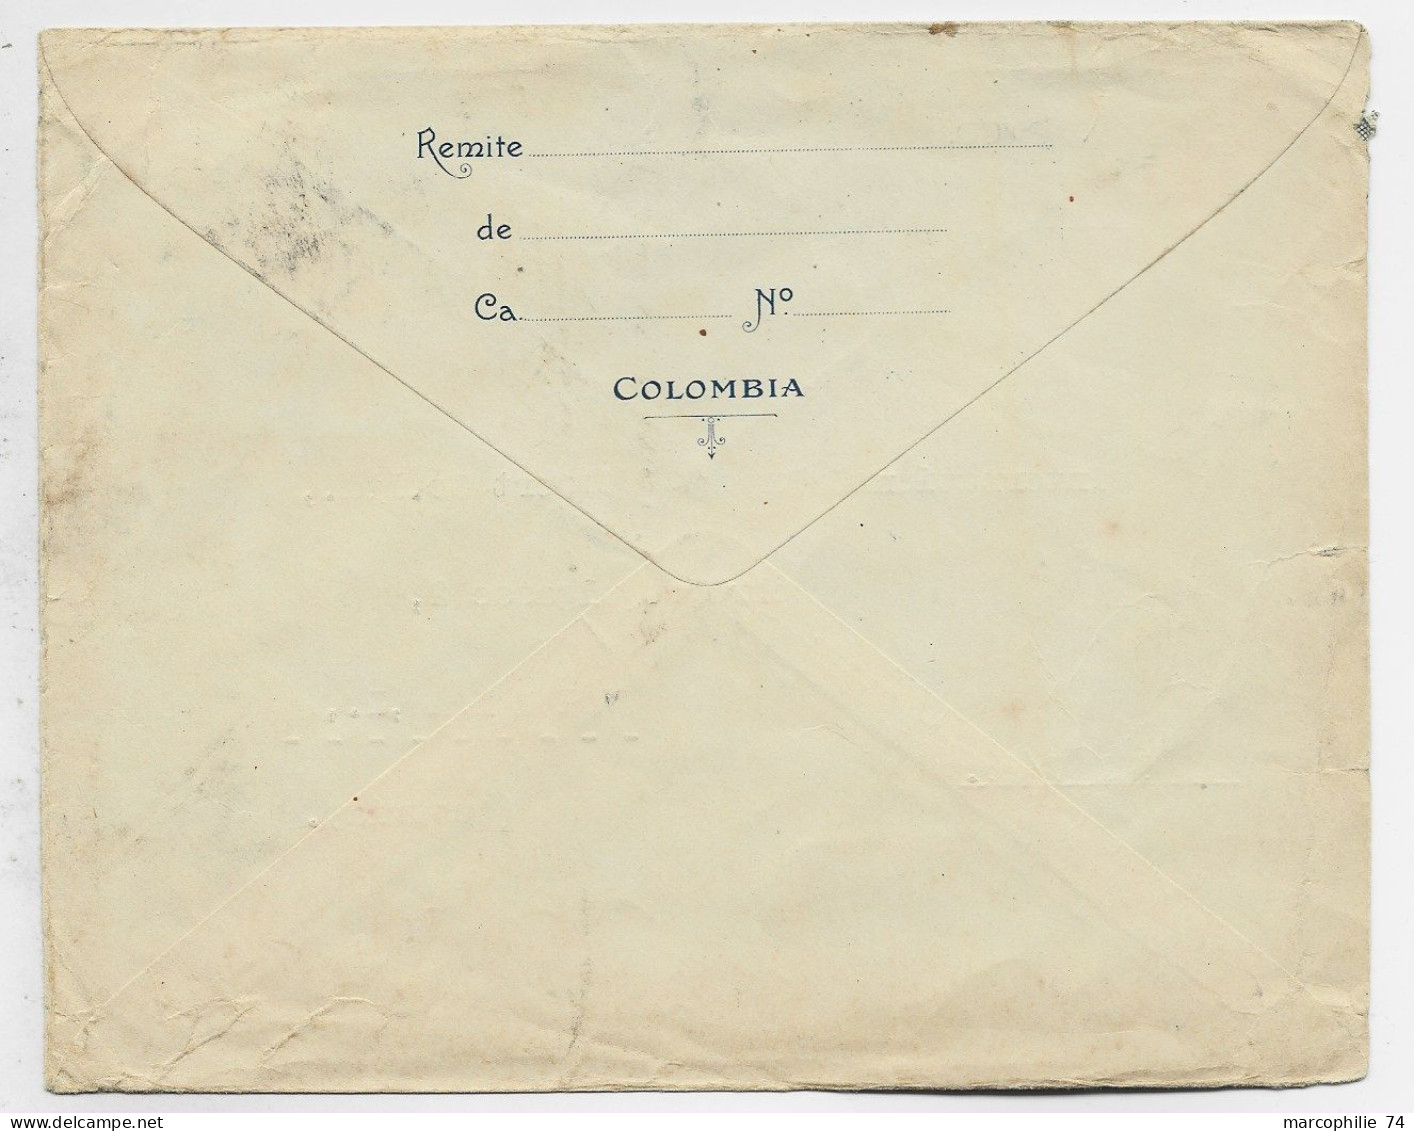 COLOMBIA ENTIER 10C ENVELOPPE COVER REPIQUAGE F BRAVO CORREO AEREO SERVICIO POSTAL MEDELLIN 22.XII.1924 TO AUSTRIA - Colombia